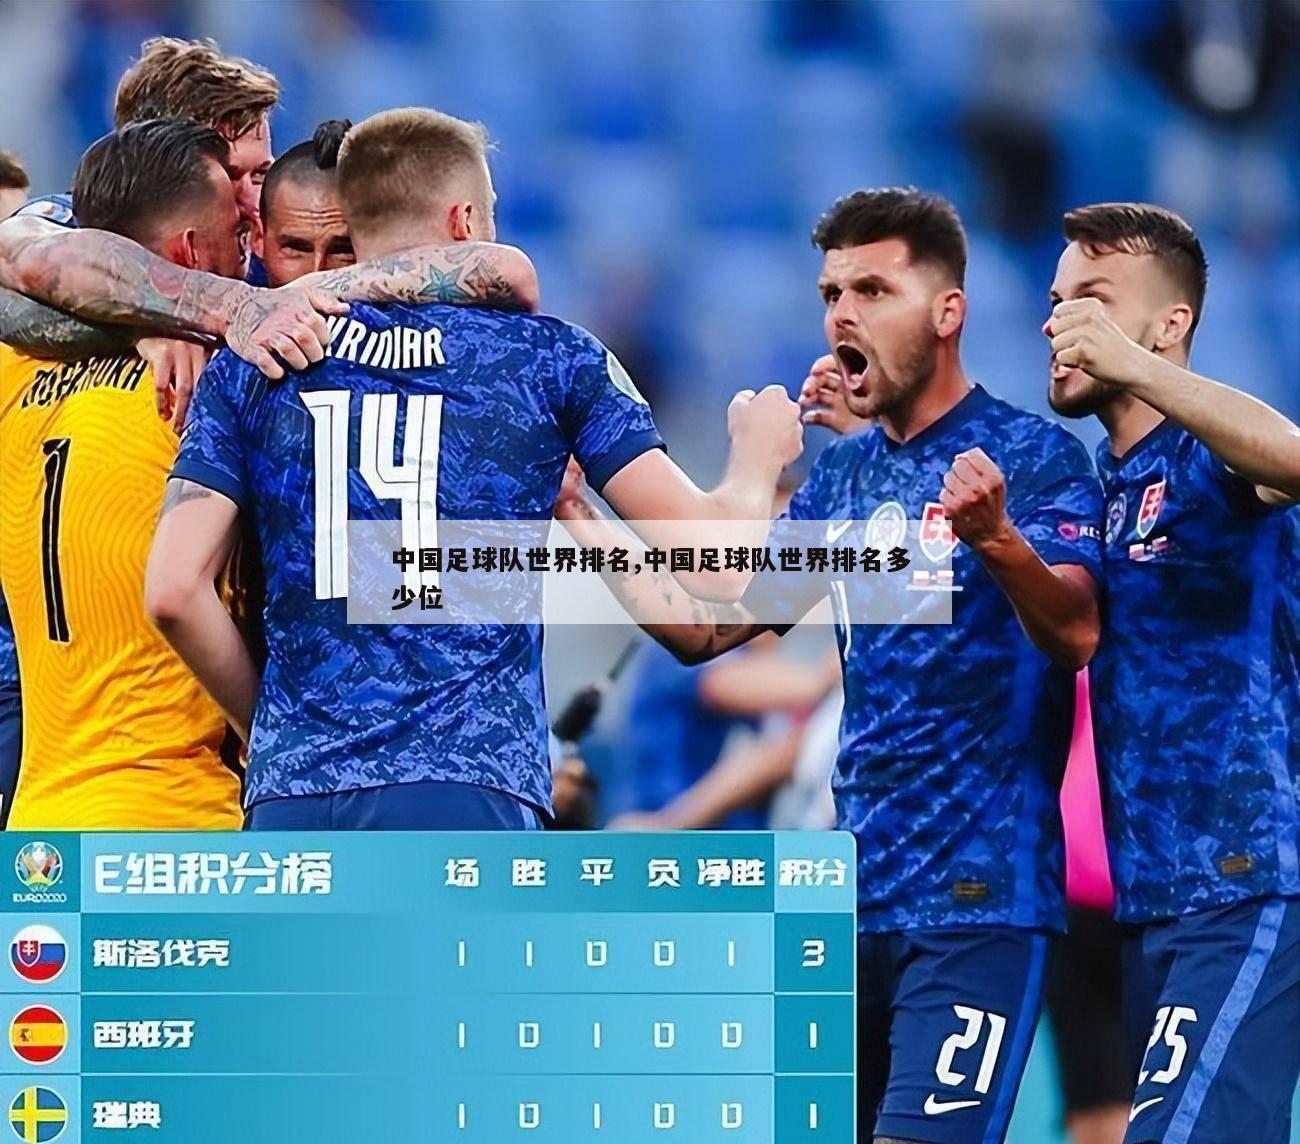 中国足球队世界排名,中国足球队世界排名多少位